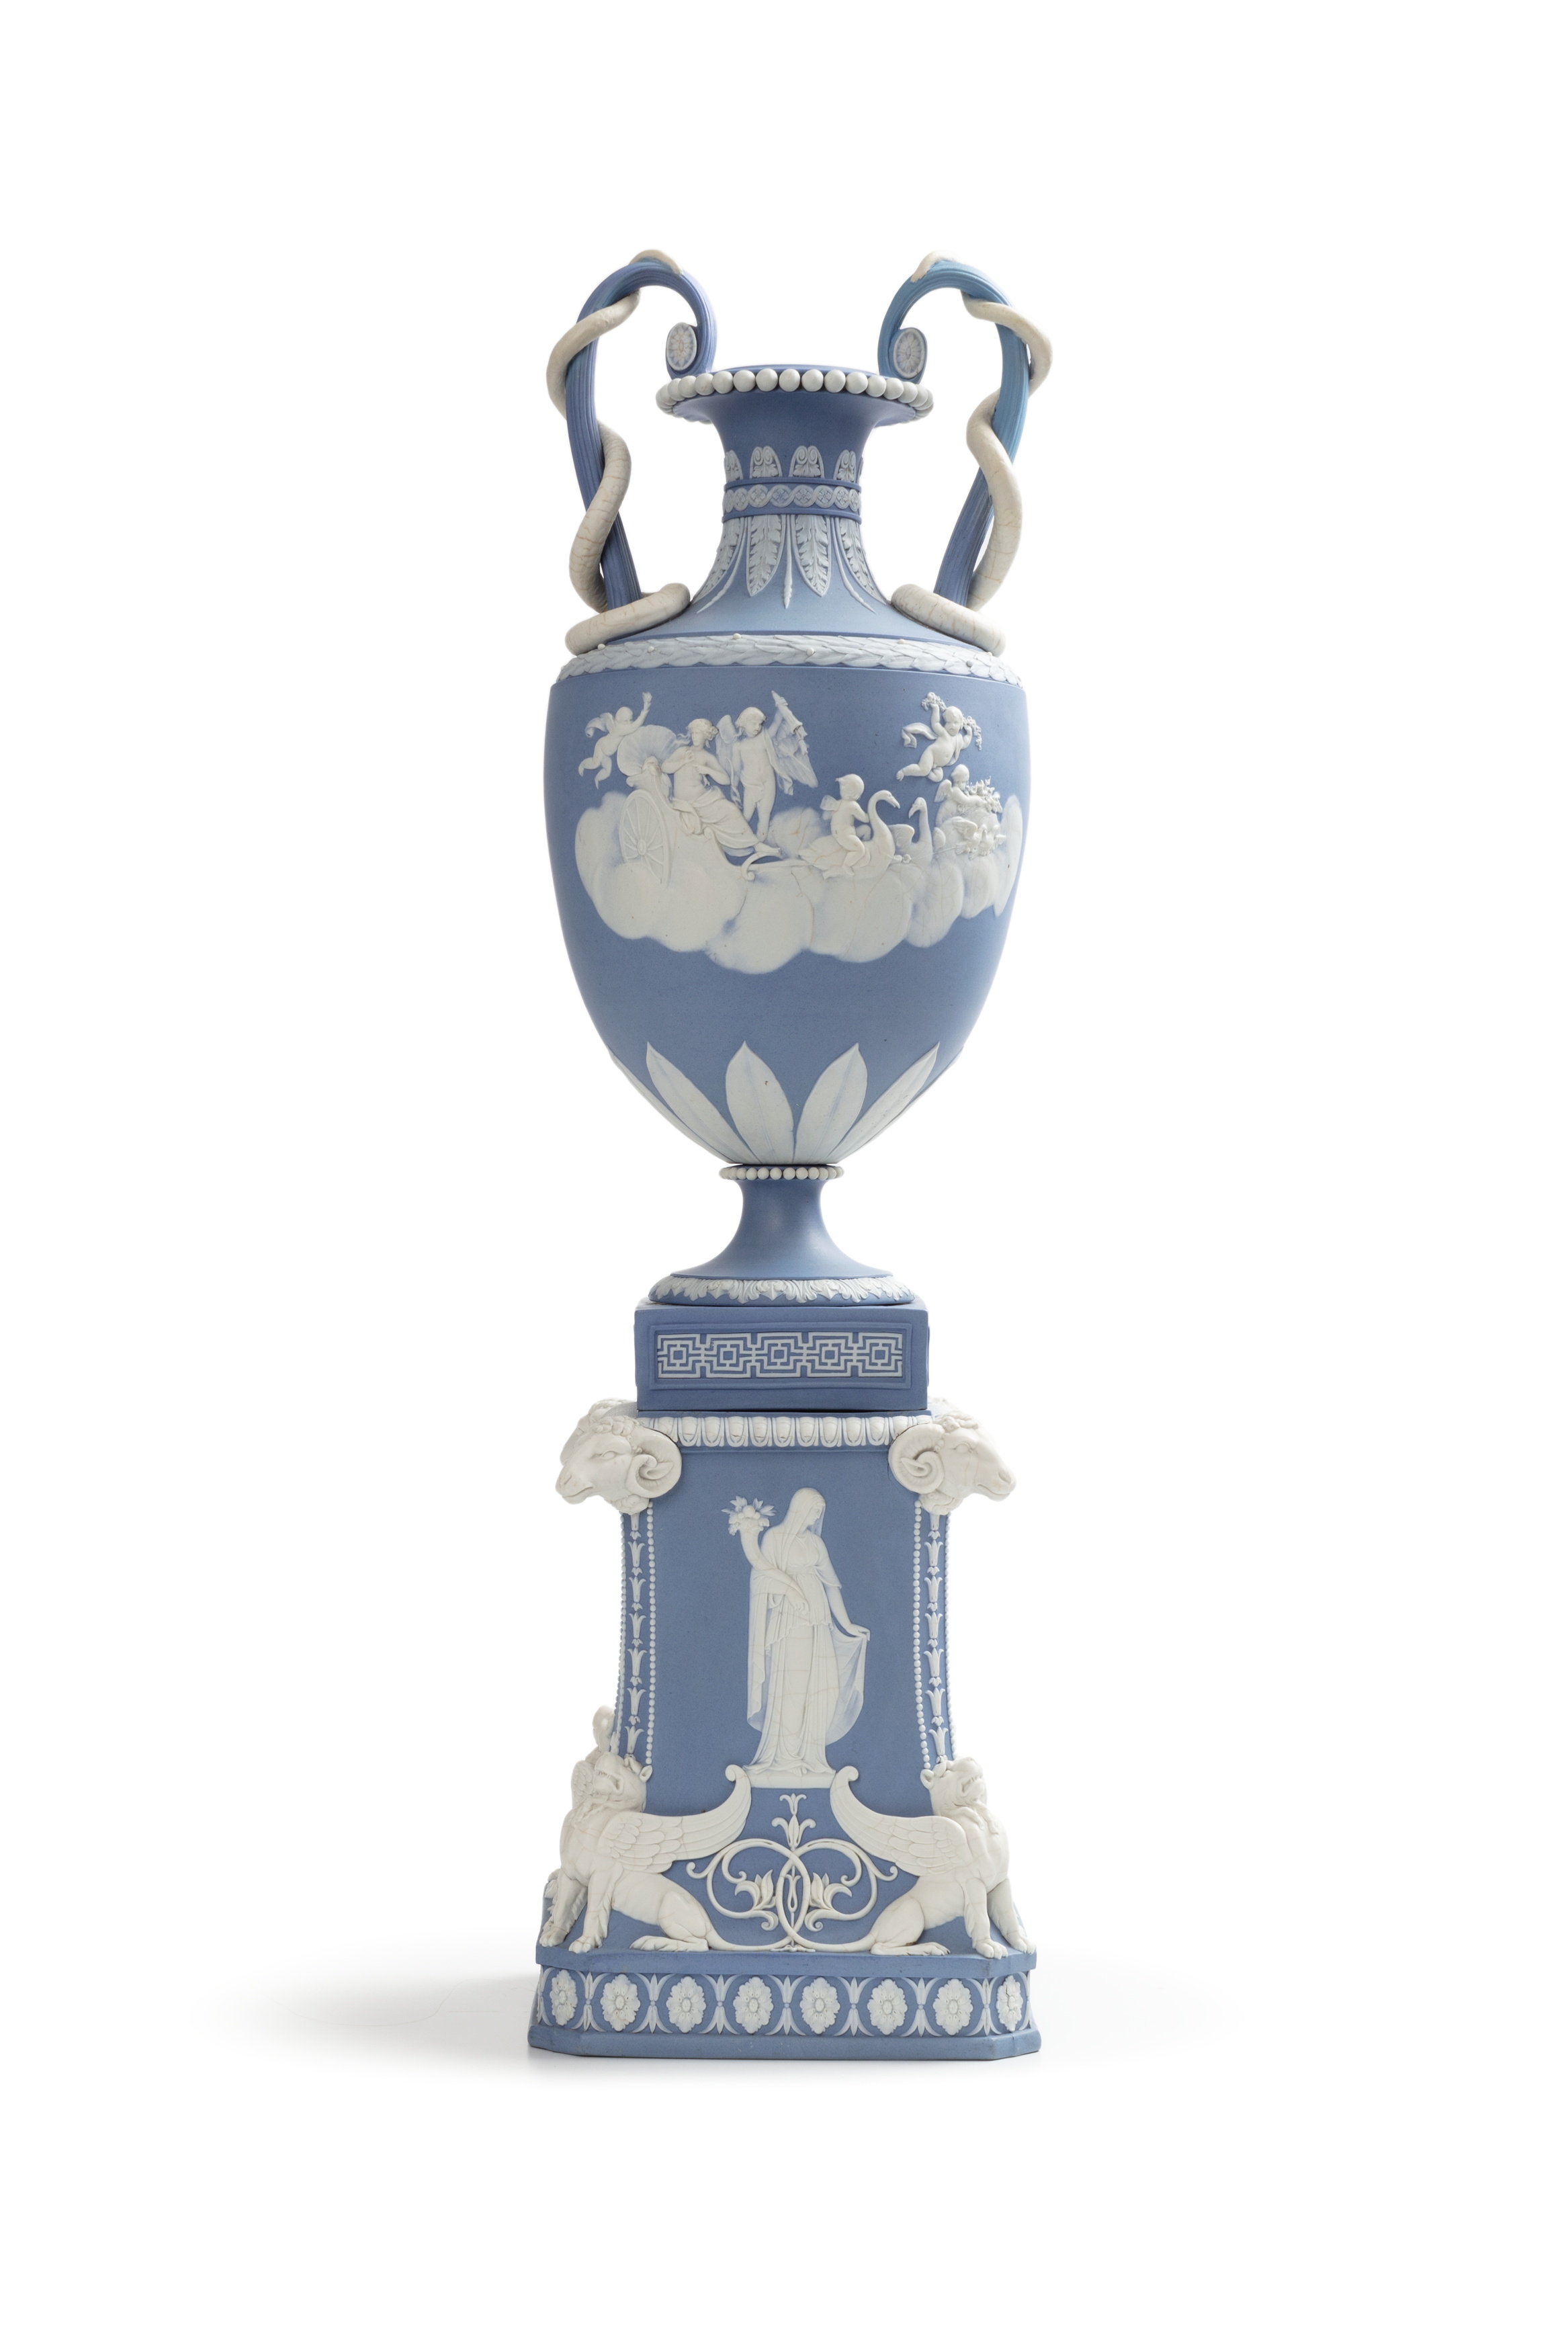 'Venus in her Chariot / Cupid Watering Swans' jasperware vase and pedestal by Wedgwood